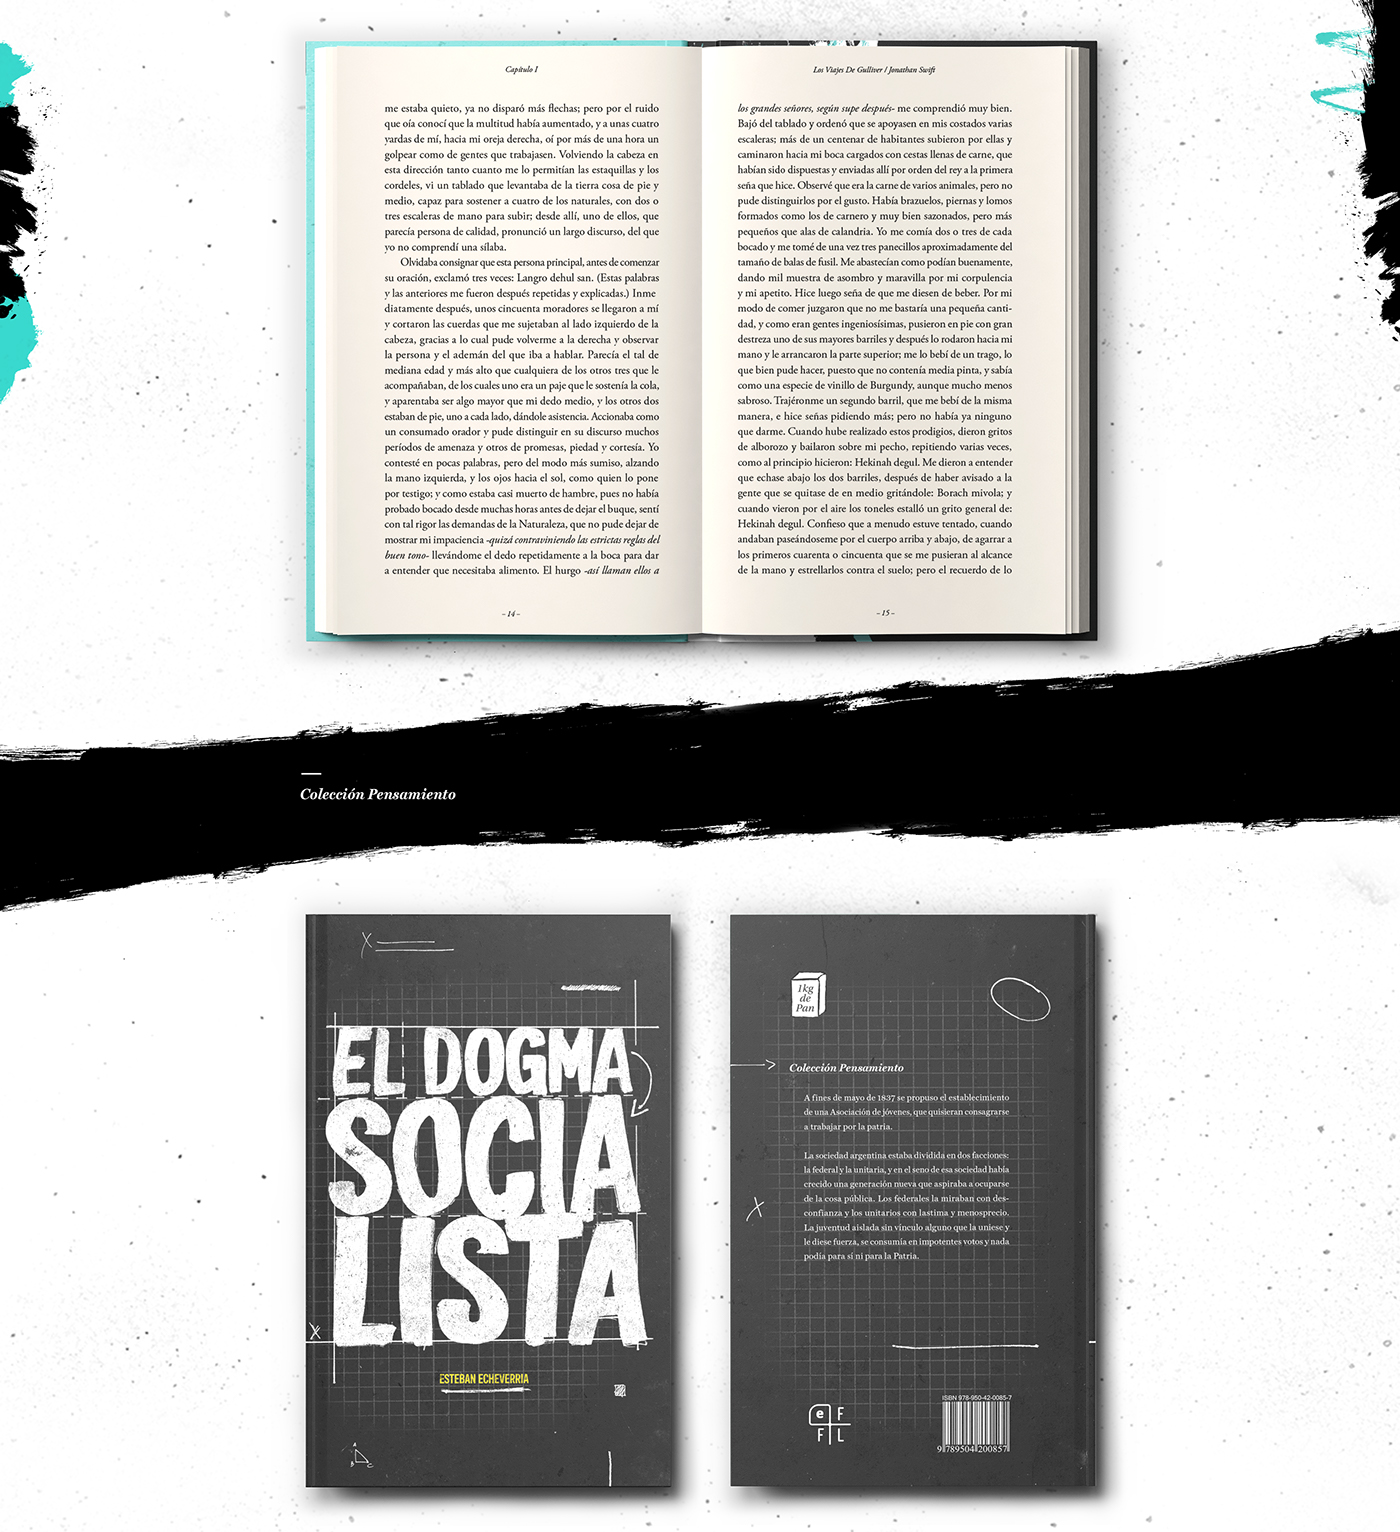 1kilodepan 1 kilo de Pan Catedra Rico Cover Book books libros tapas editorial fadu uba libro colección